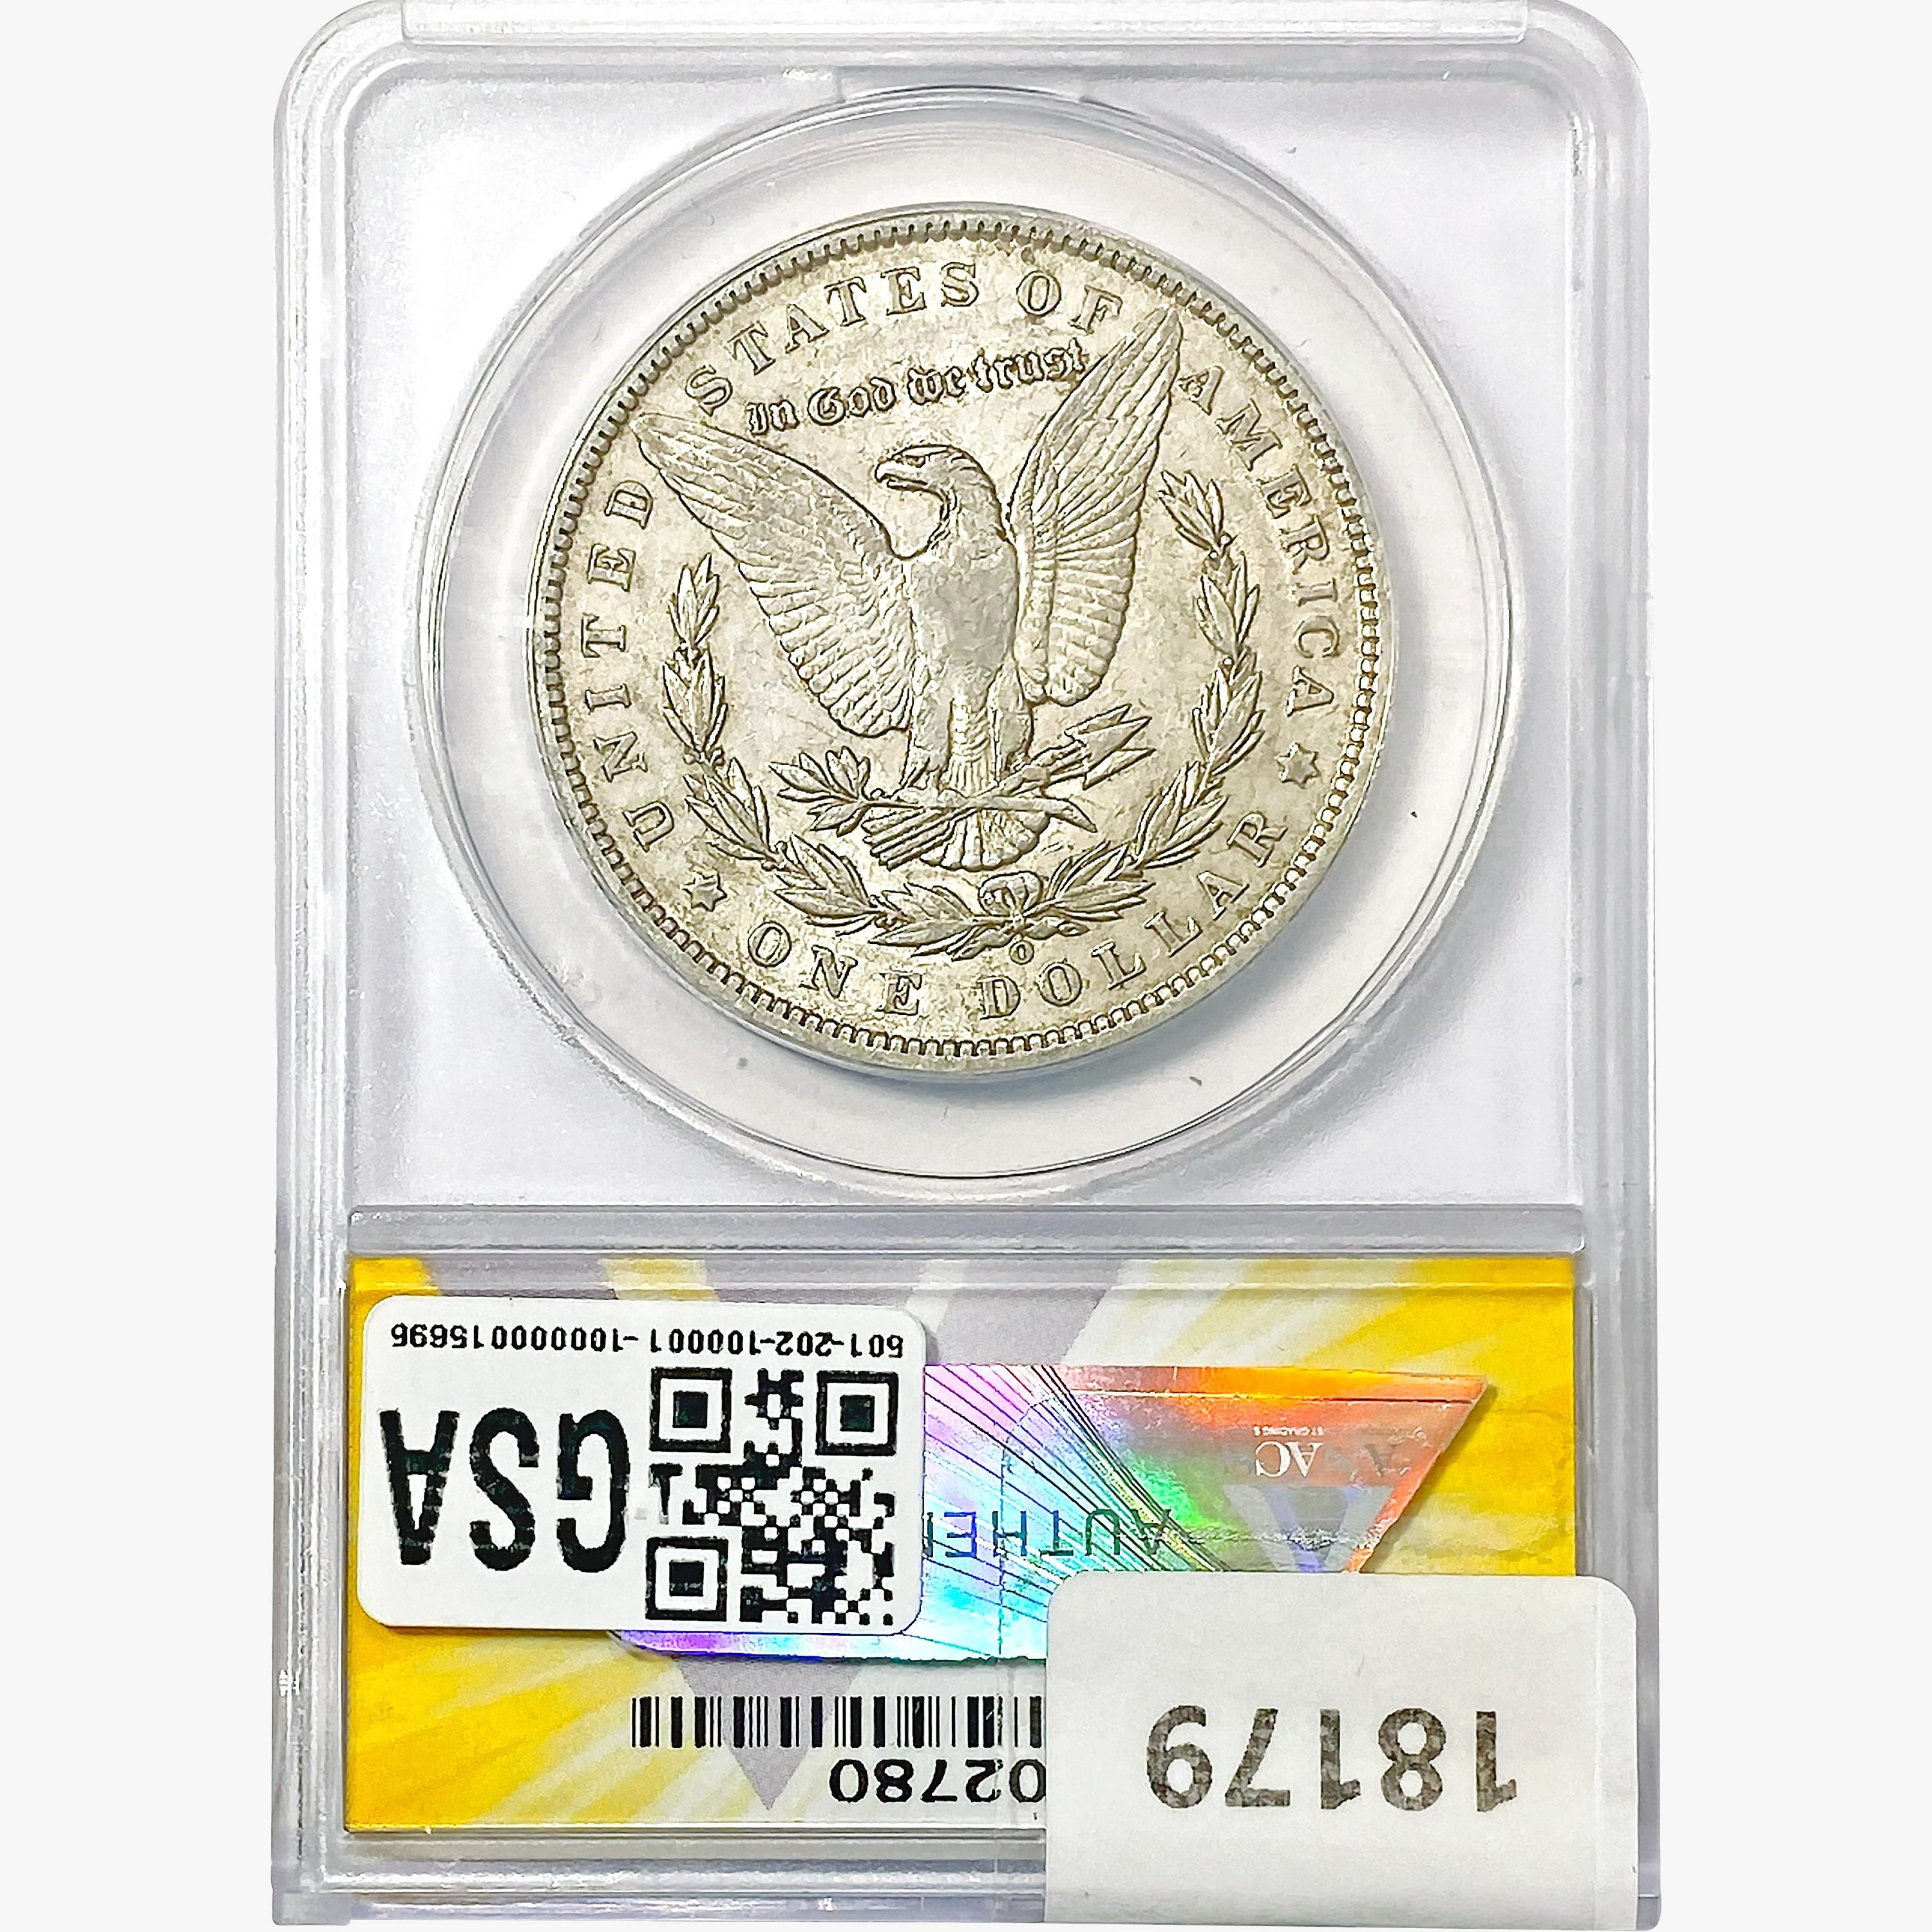 1891-O Morgan Silver Dollar ANACS AU50